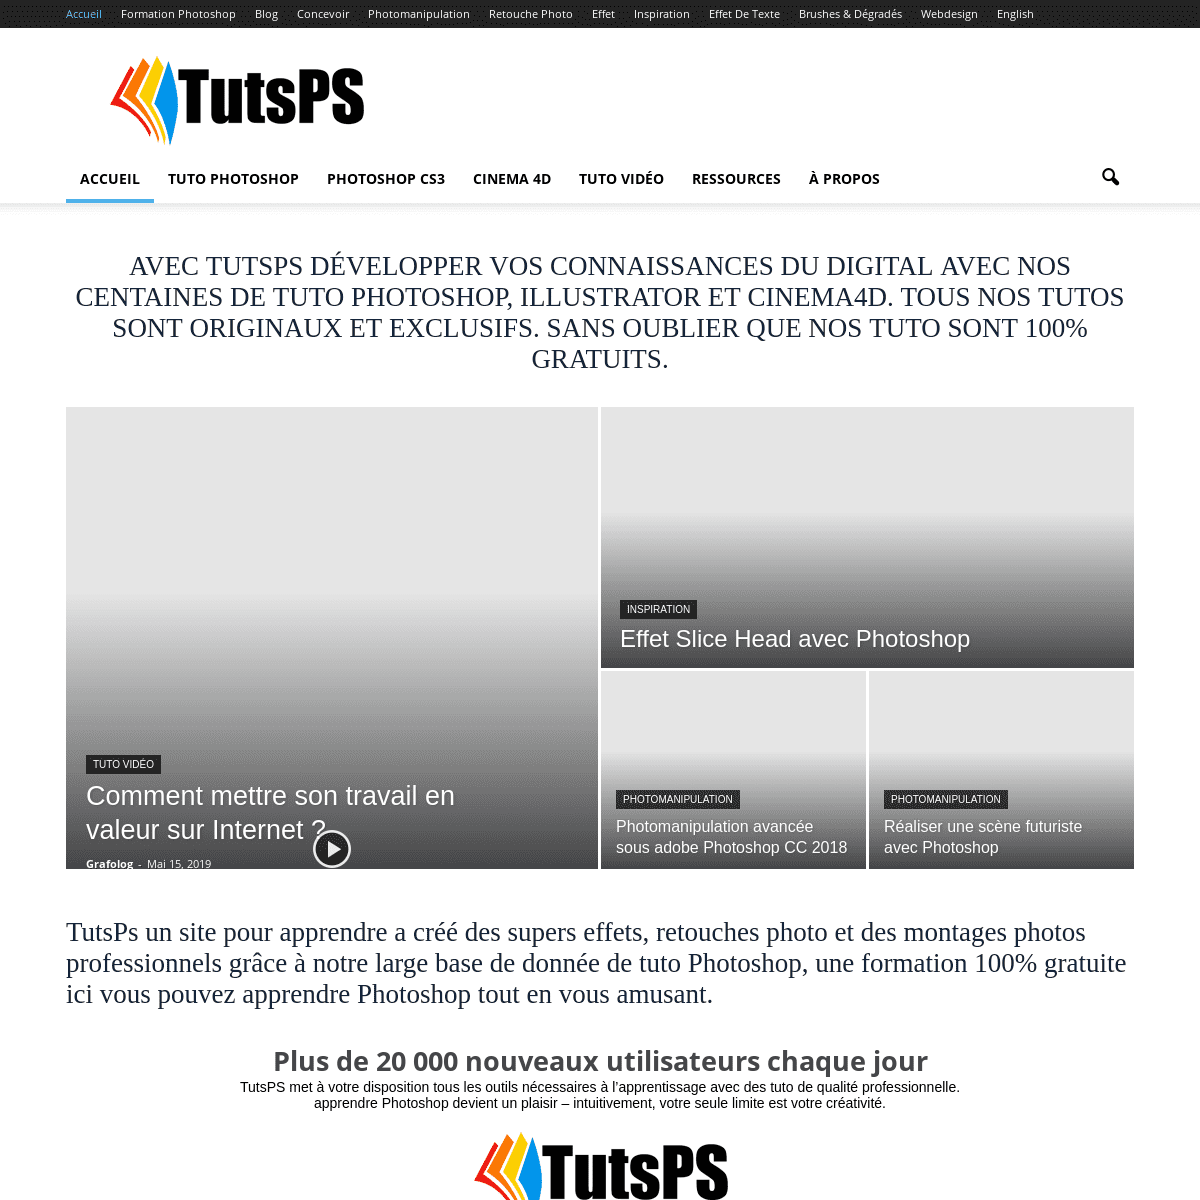 Tuto Photoshop les meilleurs tutoriaux photoshop gratuit, tuto débutant, Tuto Photoshop, illustrator et Cinema 4D - TutsPS